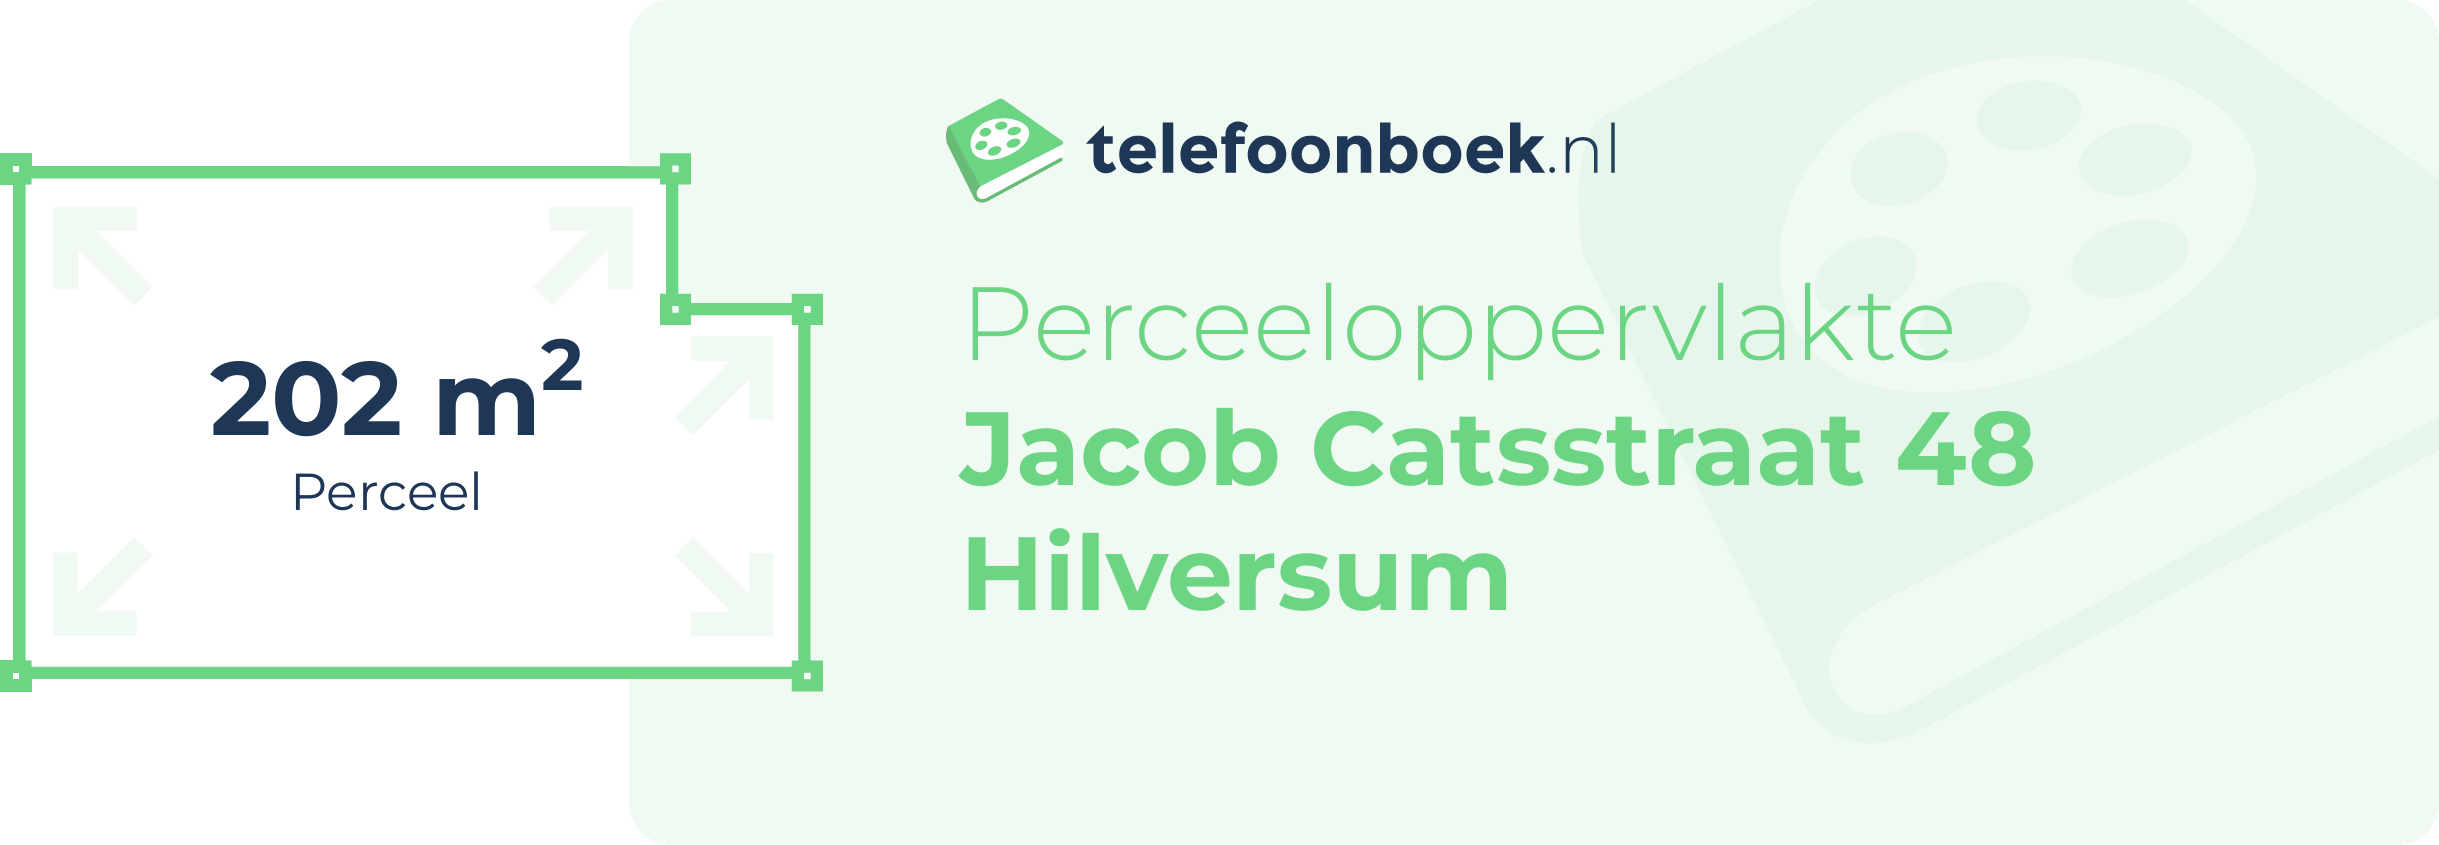 Perceeloppervlakte Jacob Catsstraat 48 Hilversum